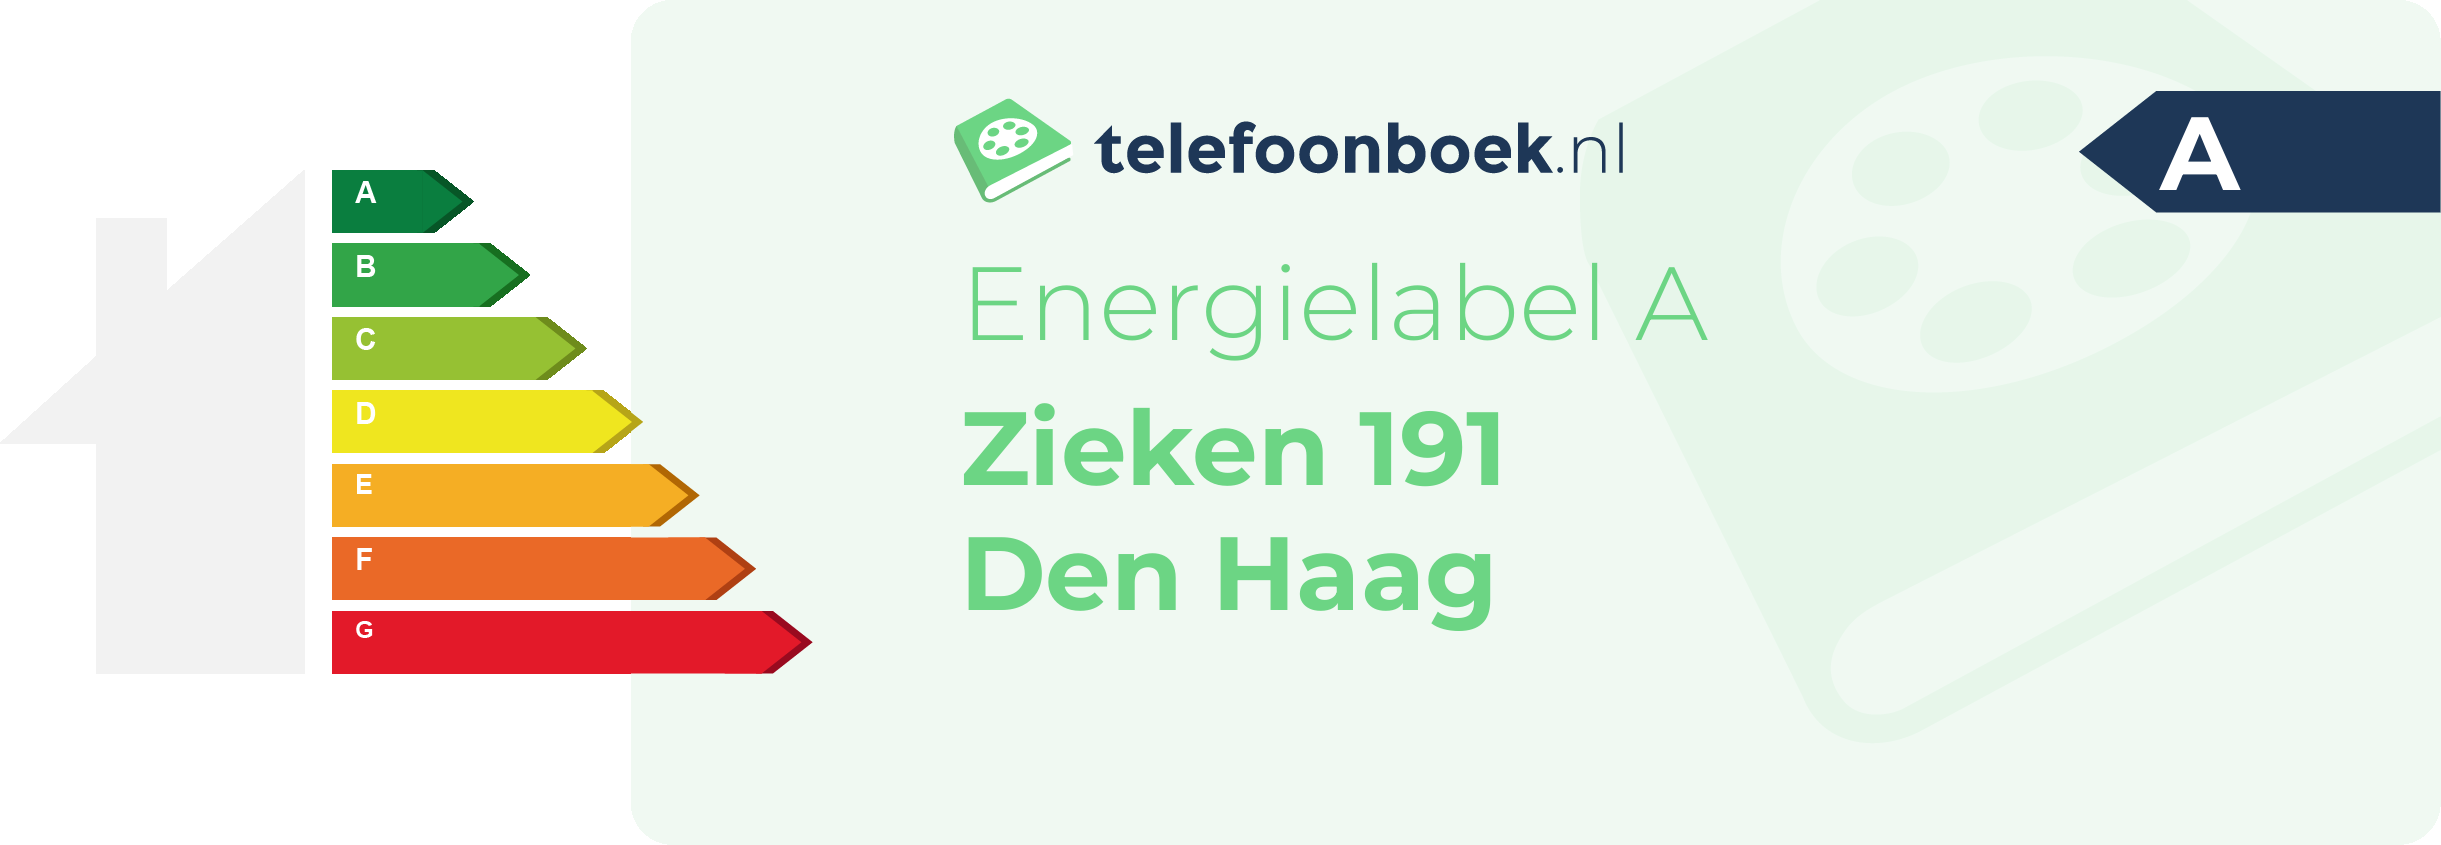 Energielabel Zieken 191 Den Haag